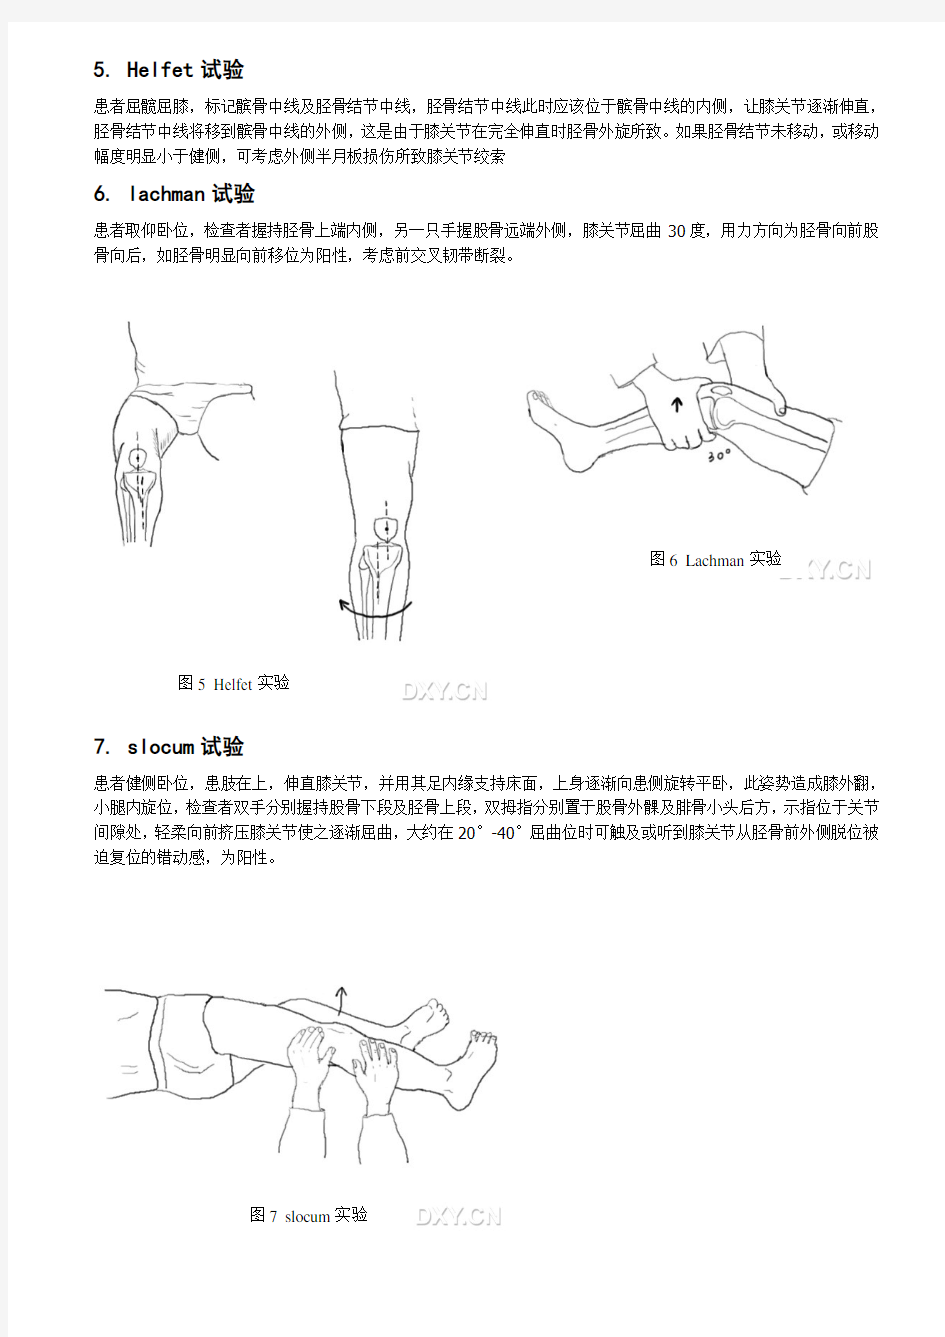 膝关节检查方法图示